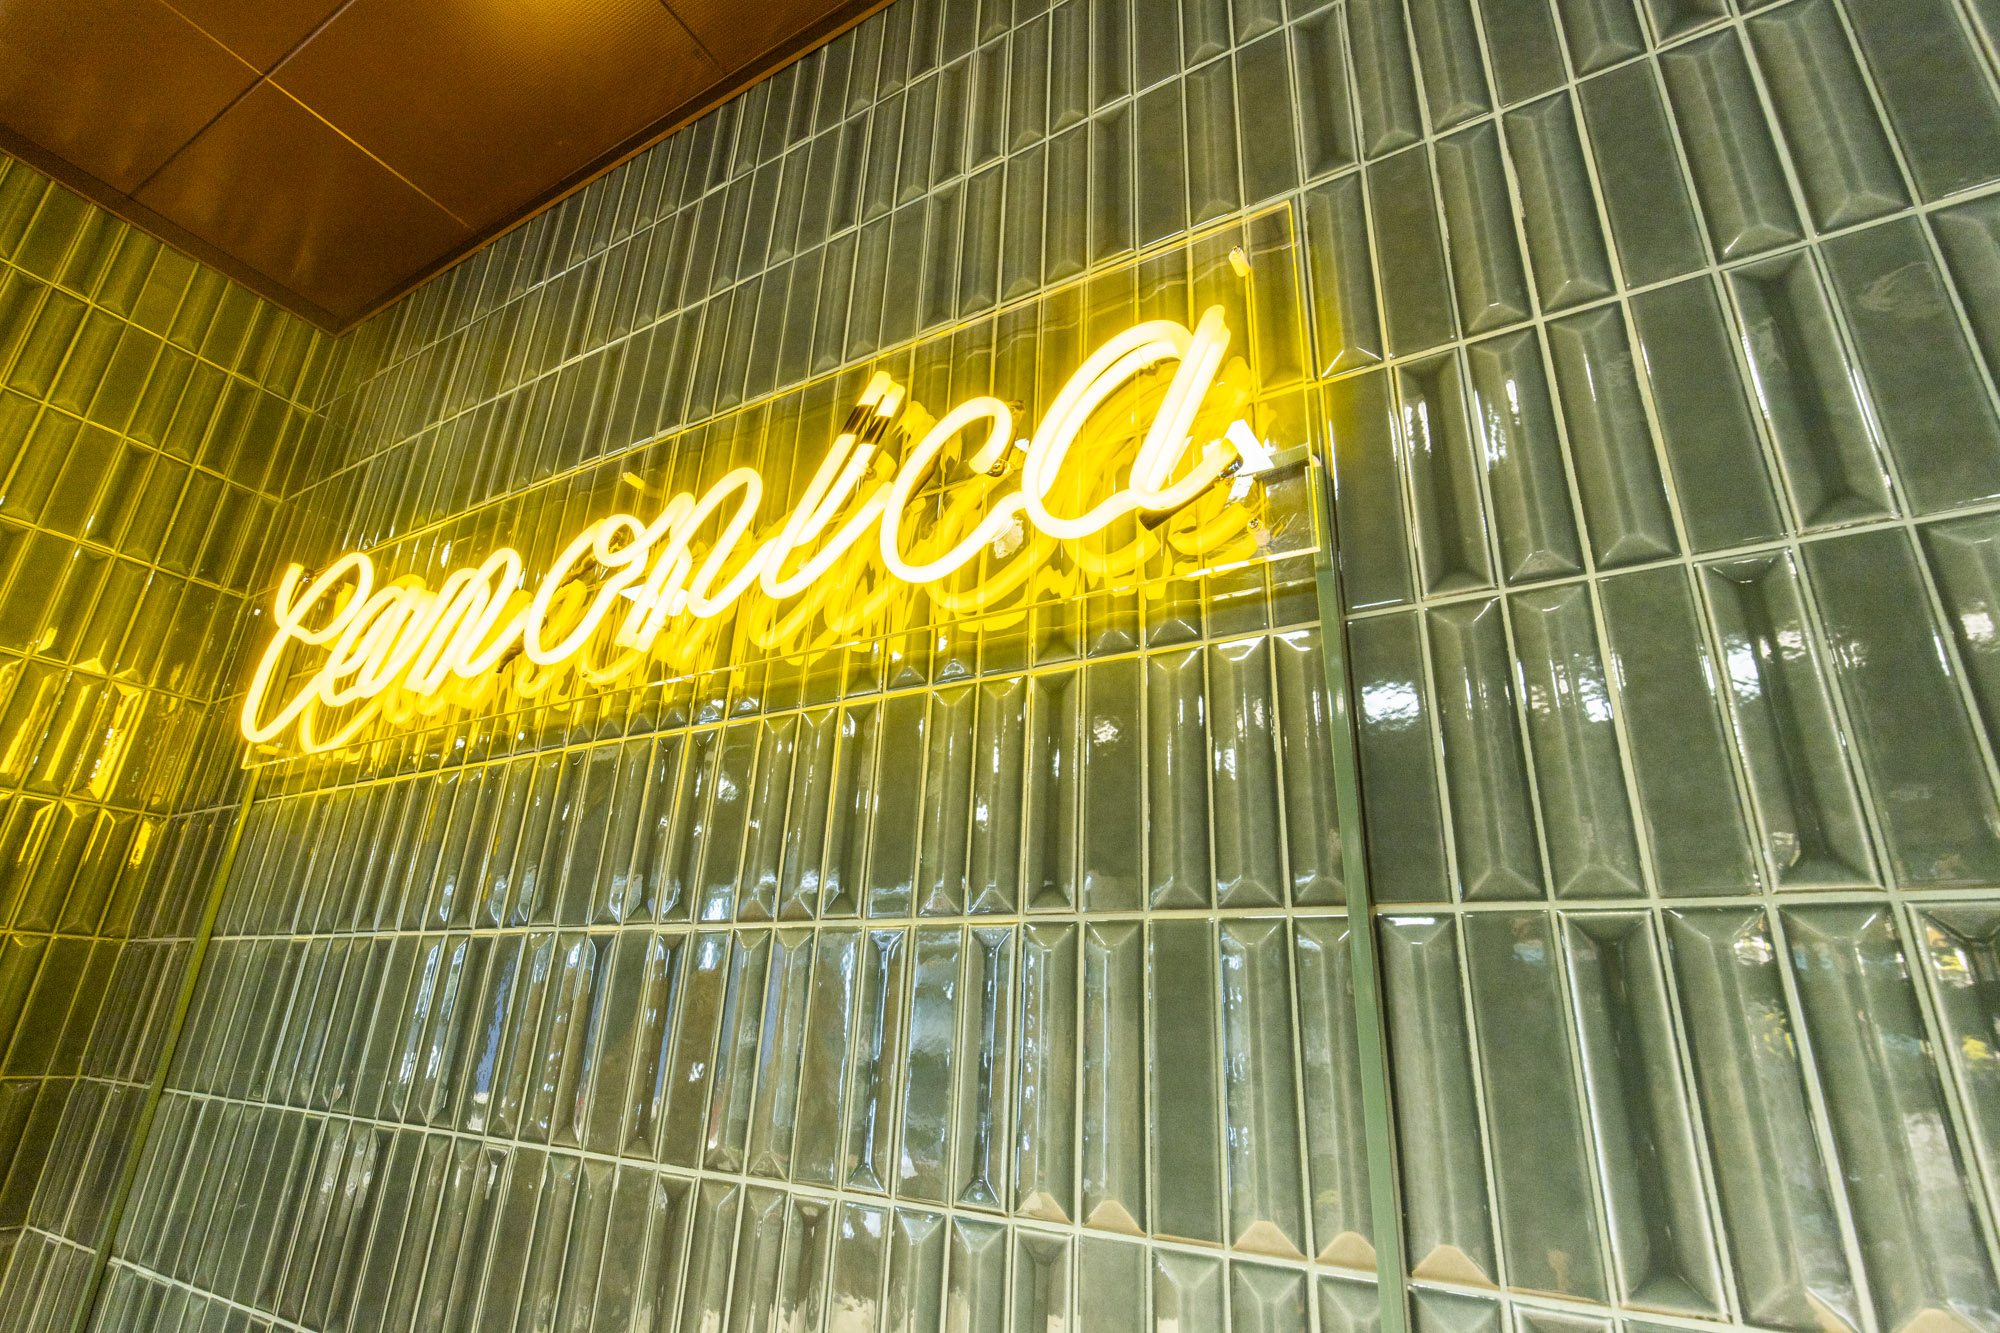 photo d’un projet d’architecte d’intérieur à Genève : la boutique de la chocolaterie Canonica